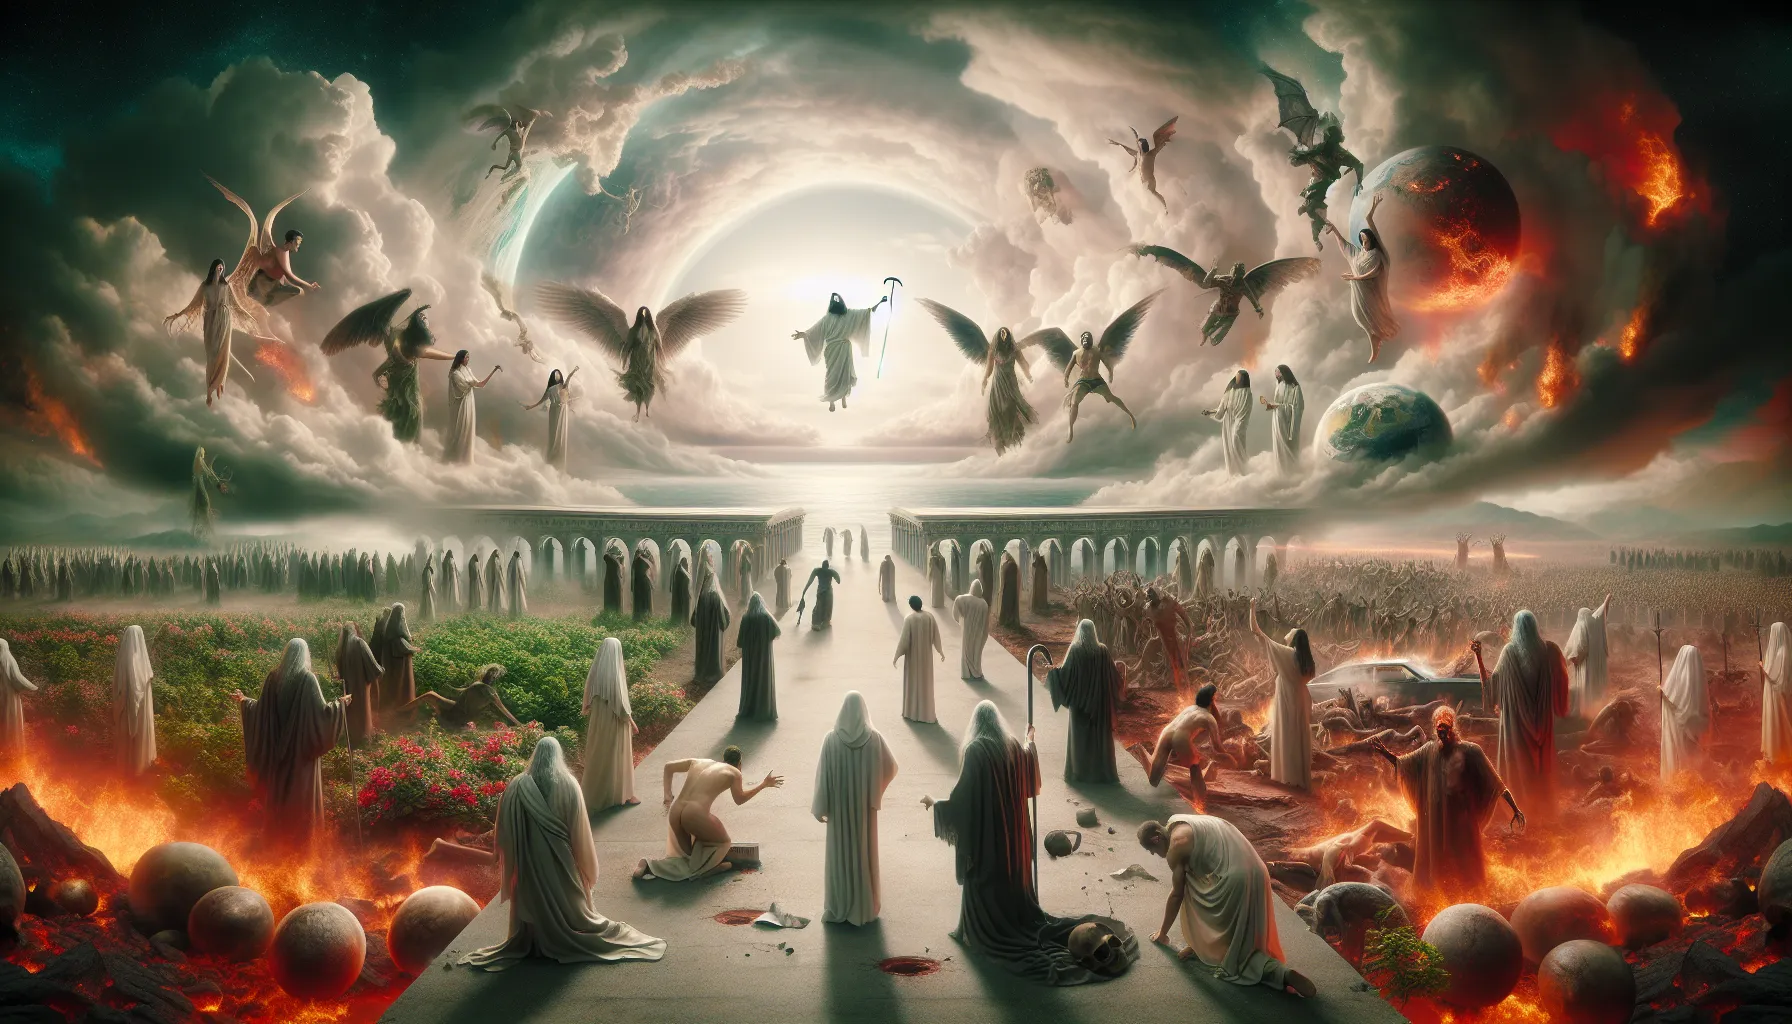 Ilustración del juicio final según la Biblia: Representación artística de la llegada del Fin del Mundo'.